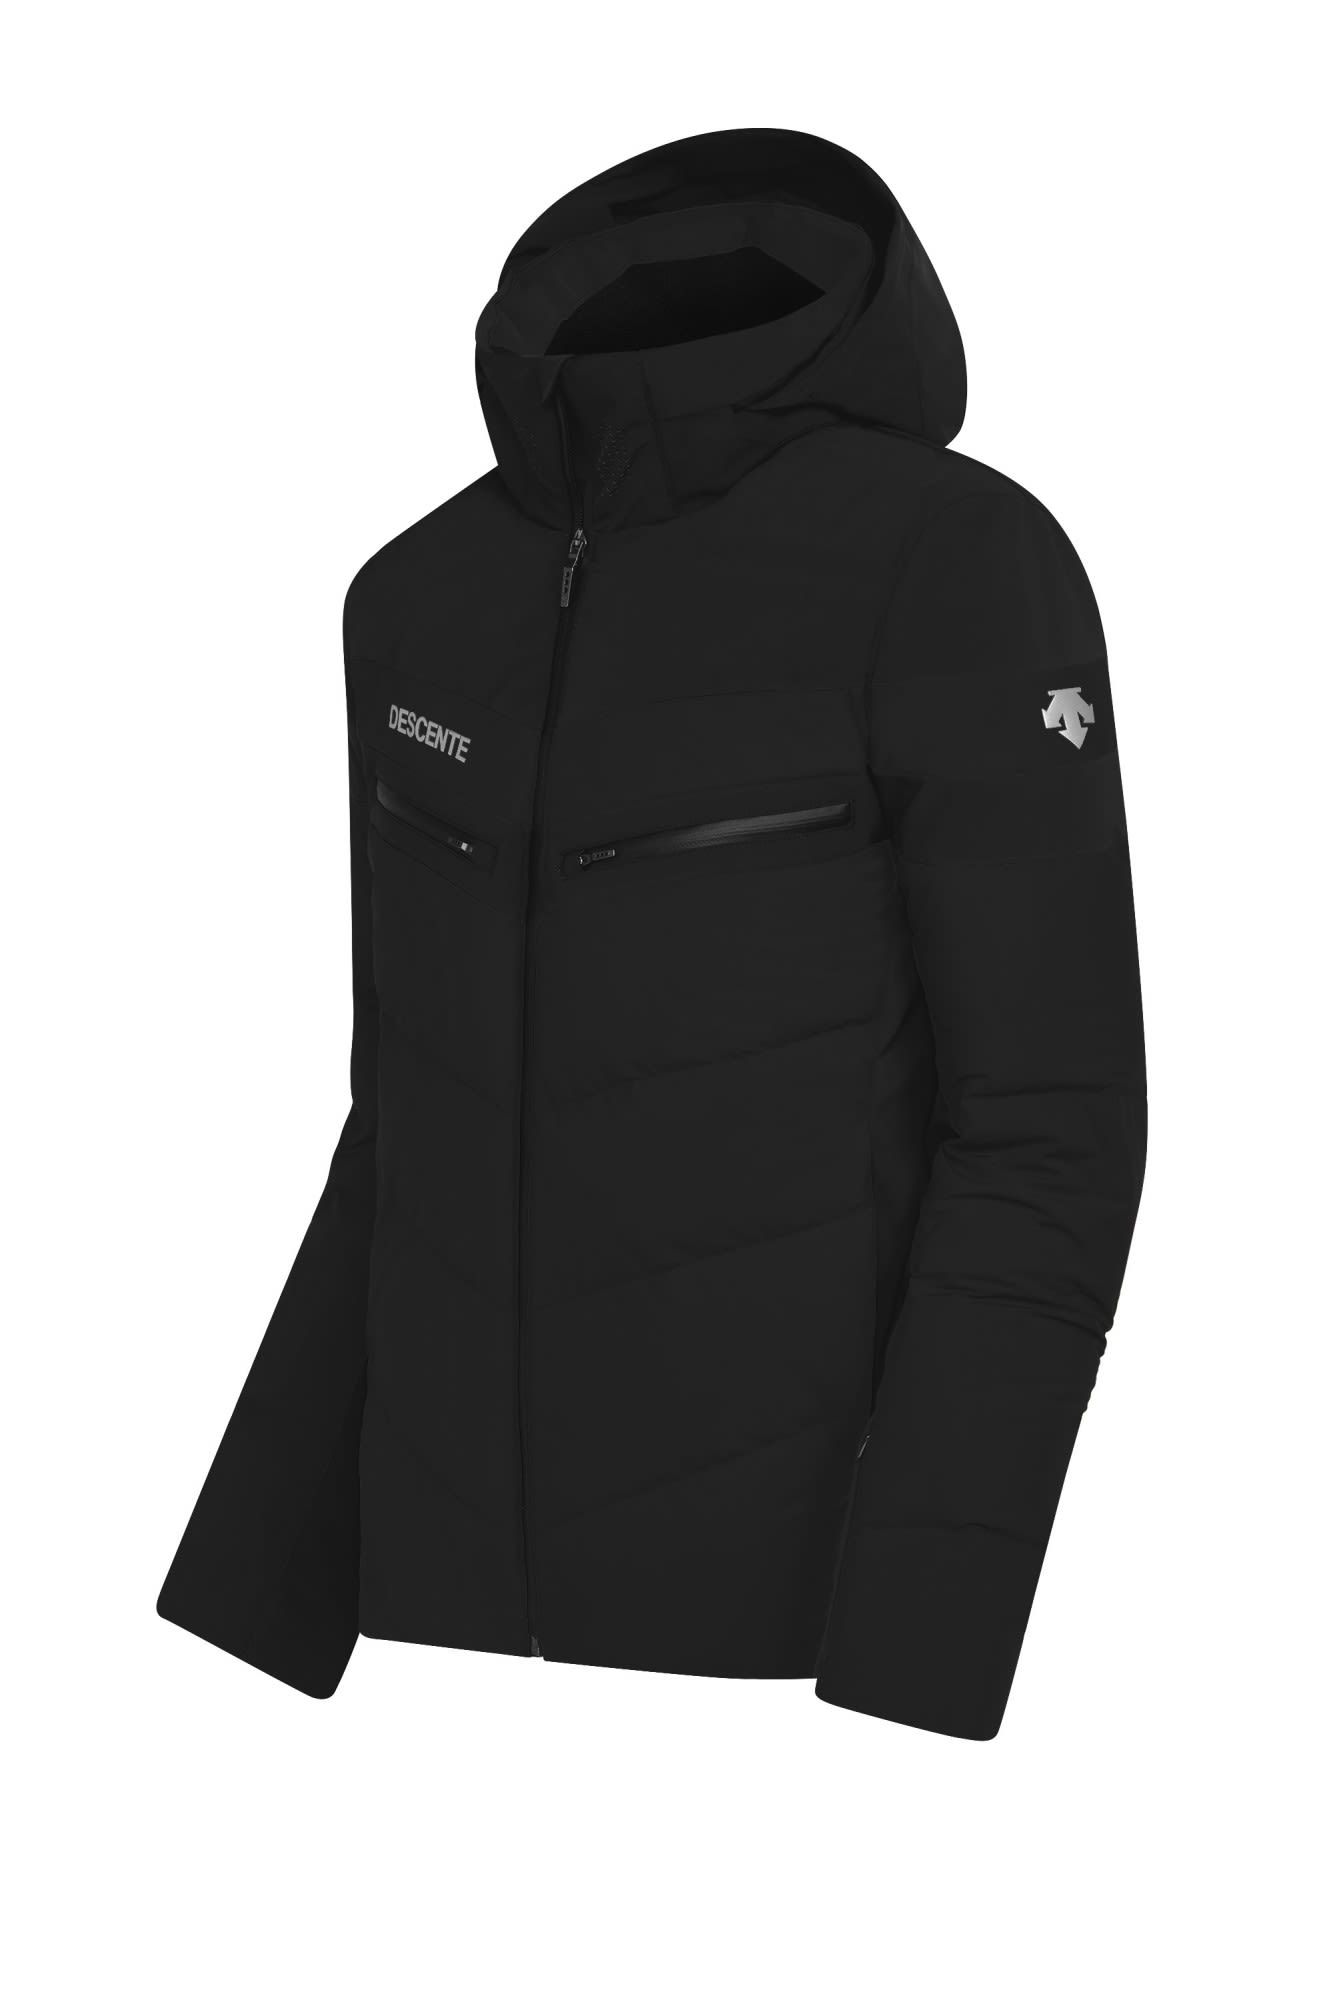 Descente Barret Hybrid Down Jacket Schwarz- Male Daunen Anoraks- Grsse 50 - Farbe Black unter Descente